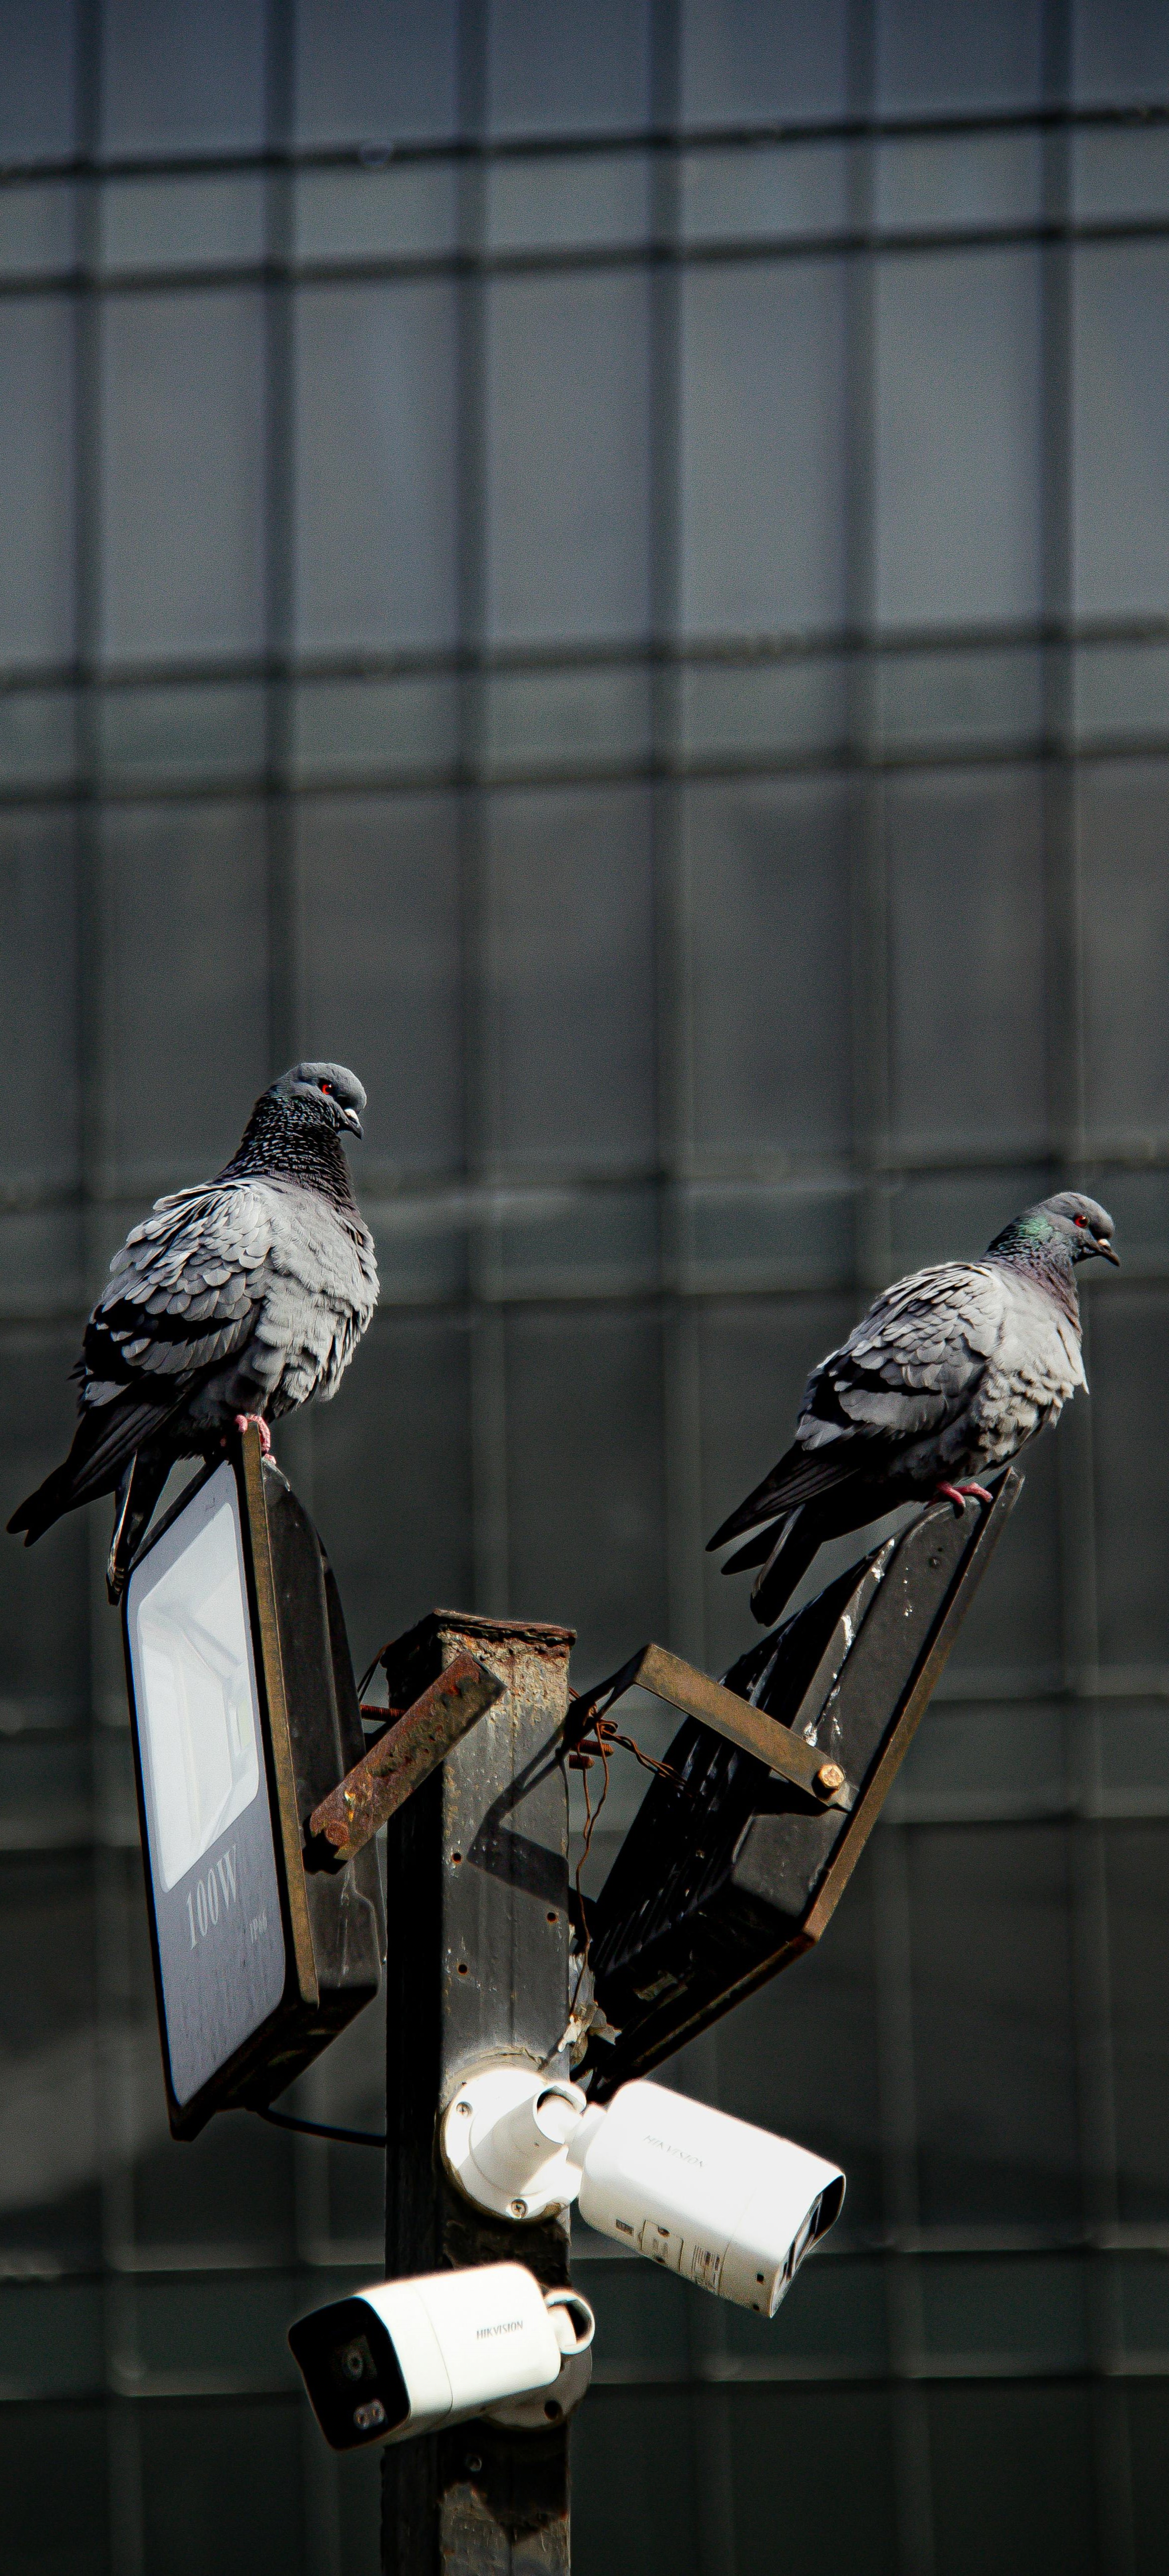 Pigeons find rest on street lights.